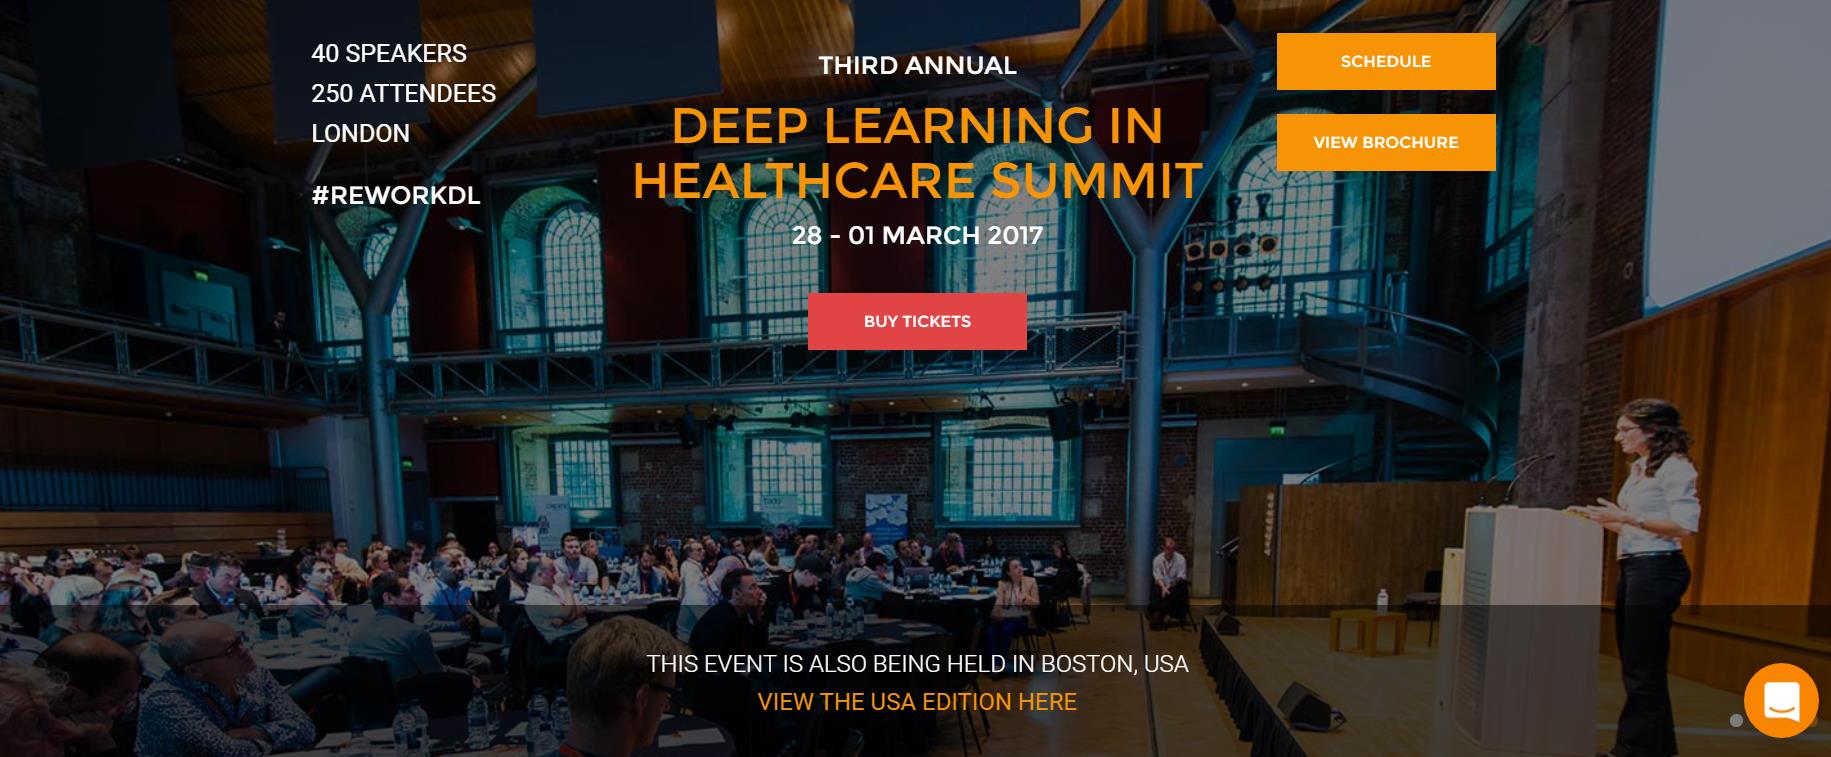 В Лондоне, с 28 февраля по 01 марта 2017 года, пройдет третья конференция «DEEP LEARNING IN HEALTH CARE SUMMIT LONDON». [1]